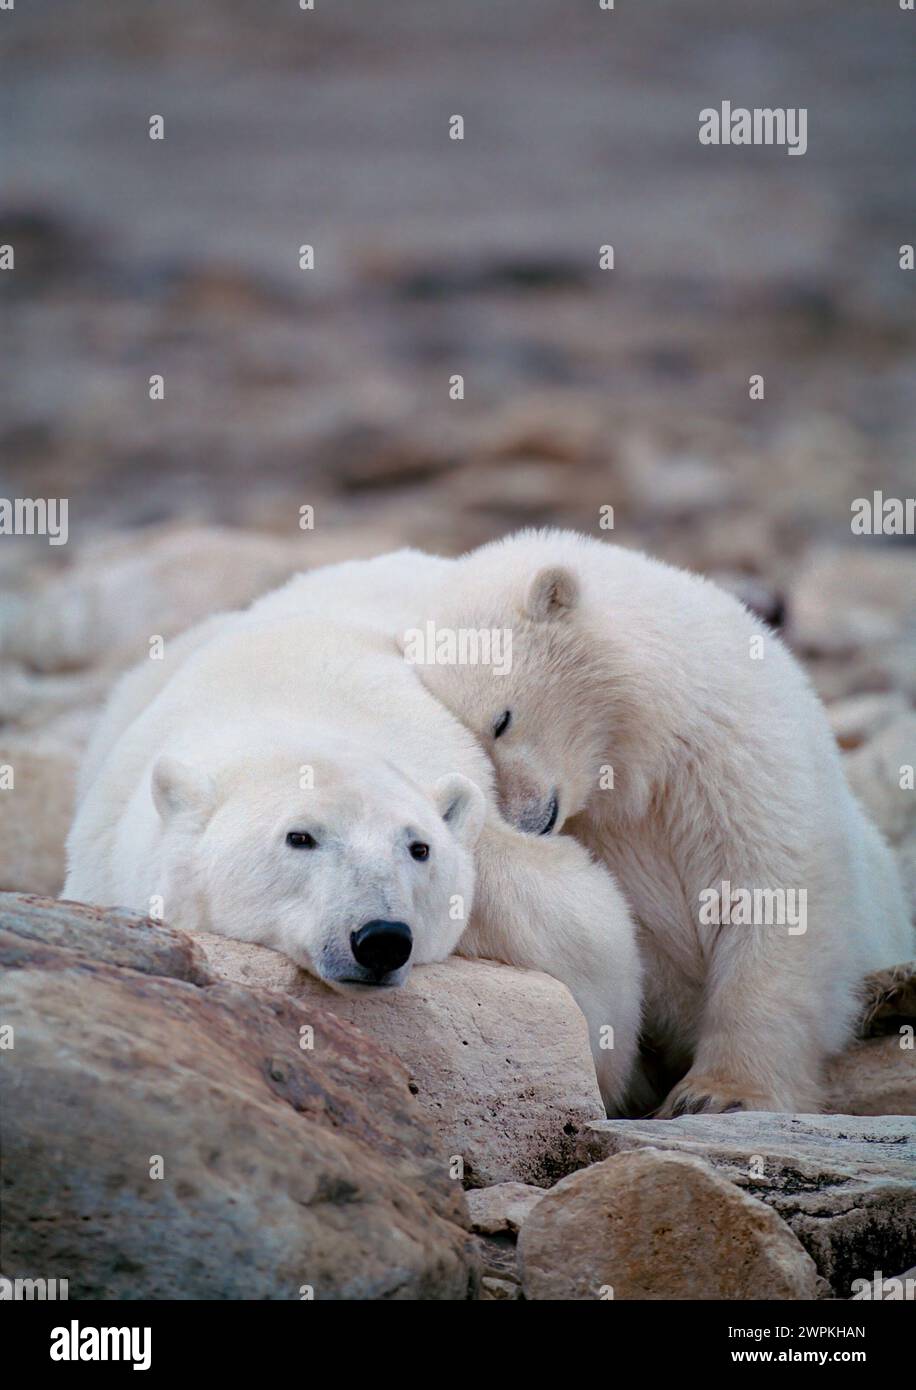 Maman est le meilleur endroit pour se reposer AU CANADA ADORABLES images de deux ours polaires jouant-se battant l'un avec l'autre vous feront rire. Environ deux ans ol Banque D'Images